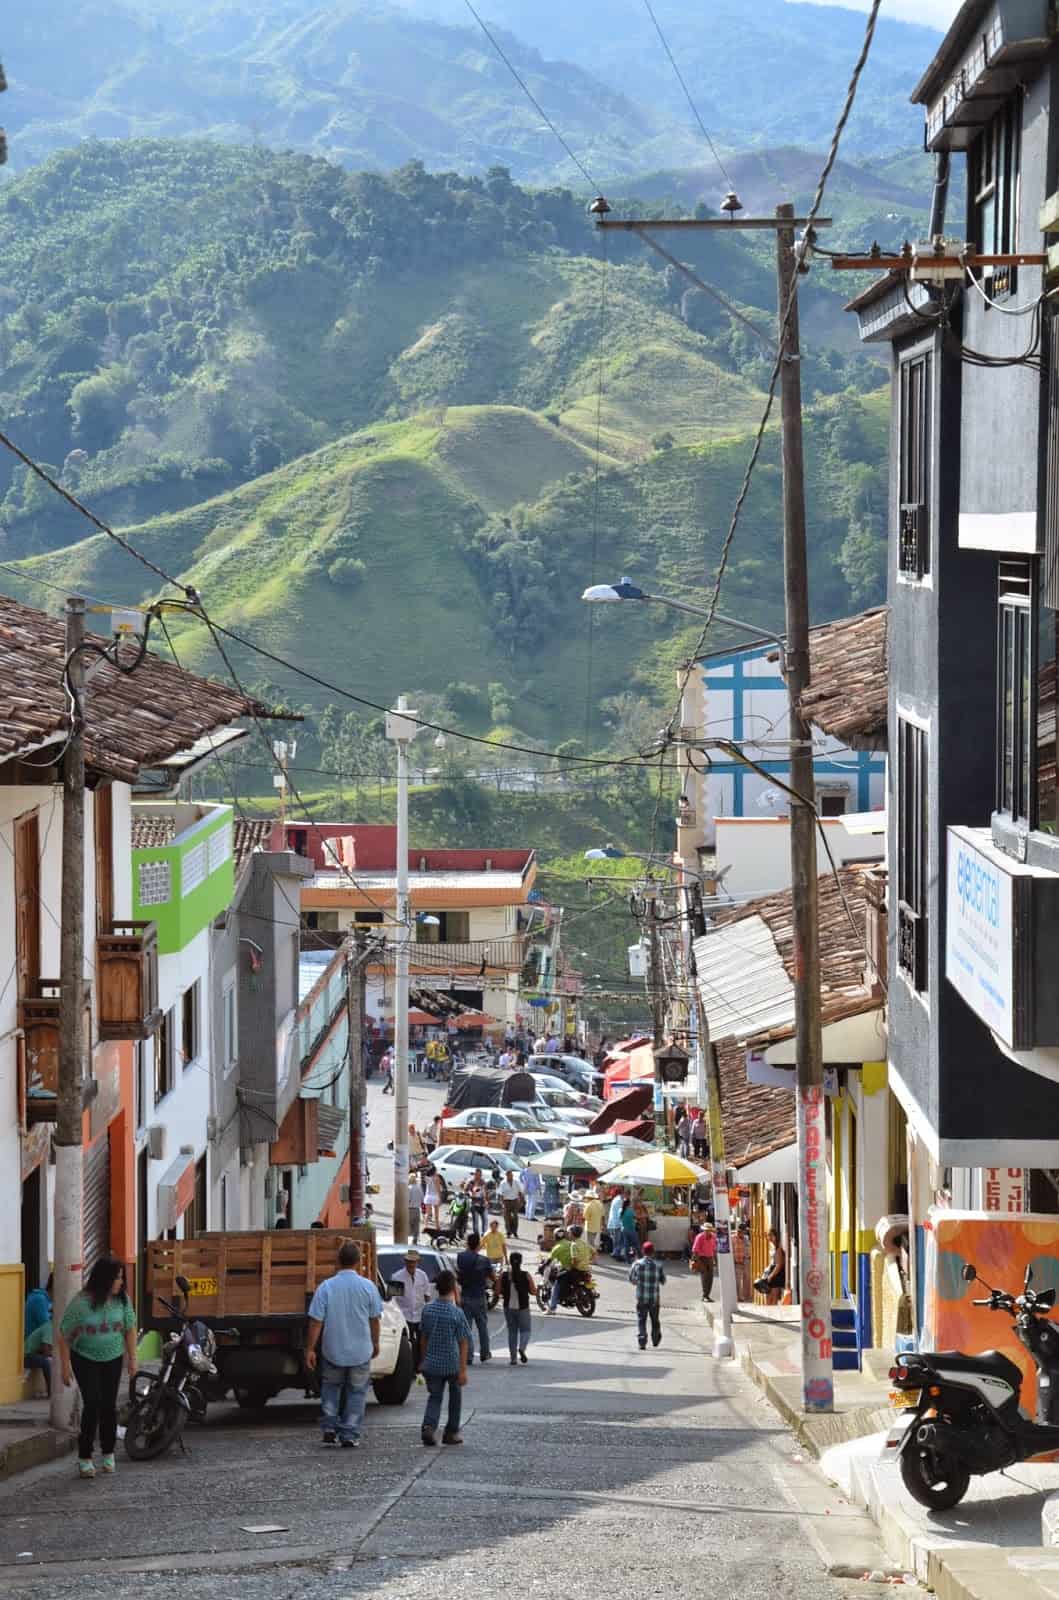 A street in Belén de Umbría, Risaralda, Colombia